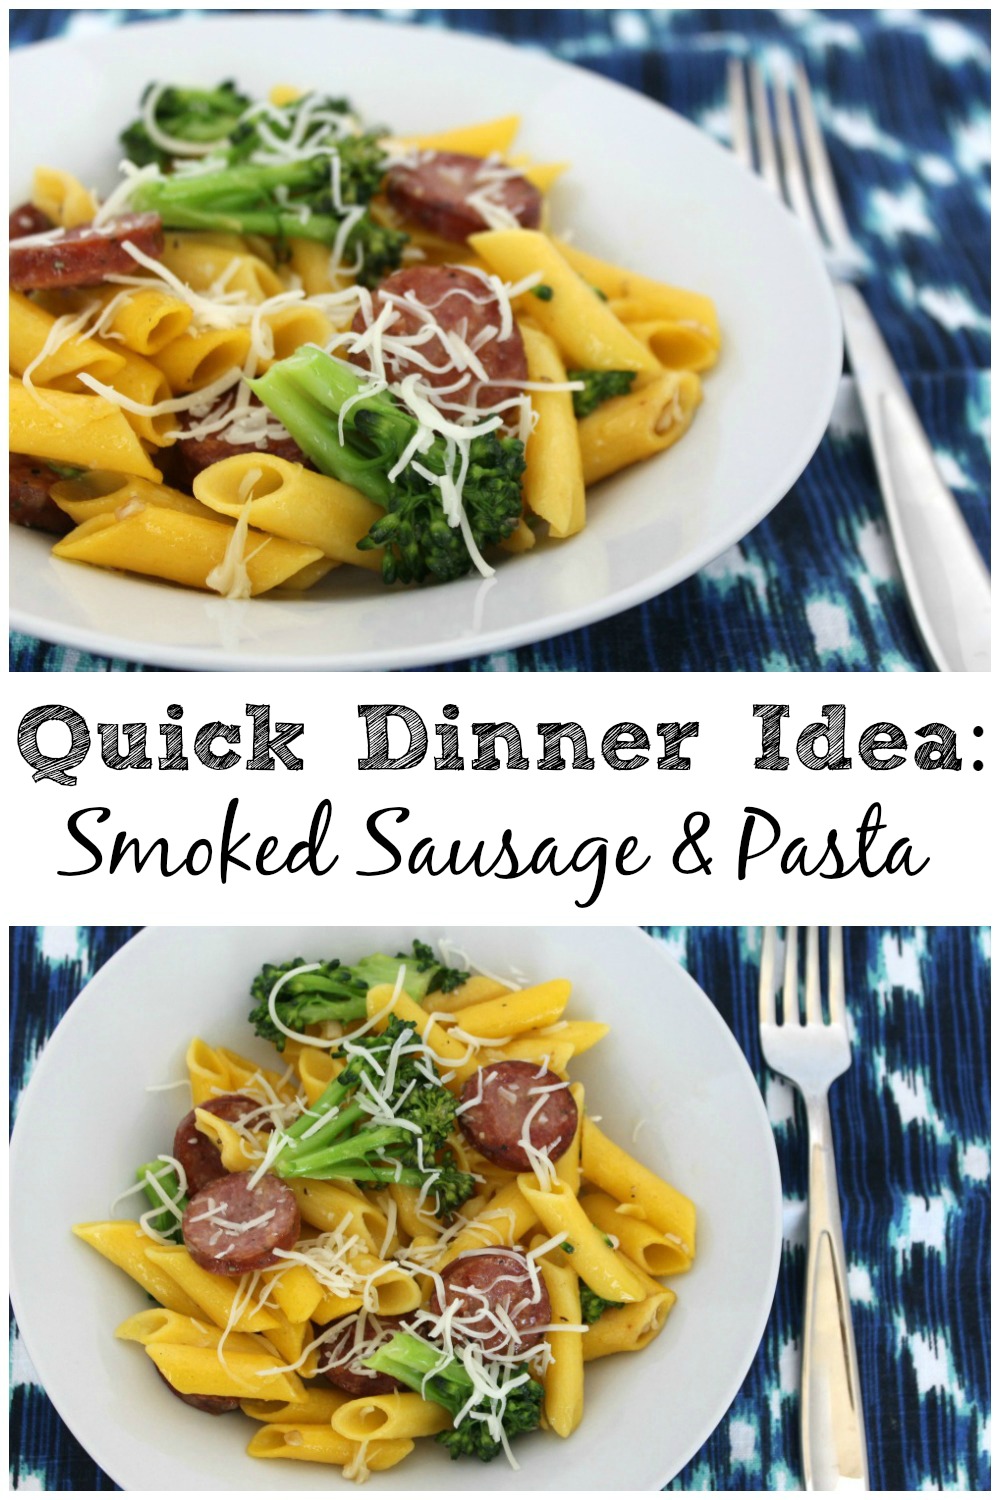 Quick Dinner Ideas: Smoked Sausage & Pasta with Broccoli